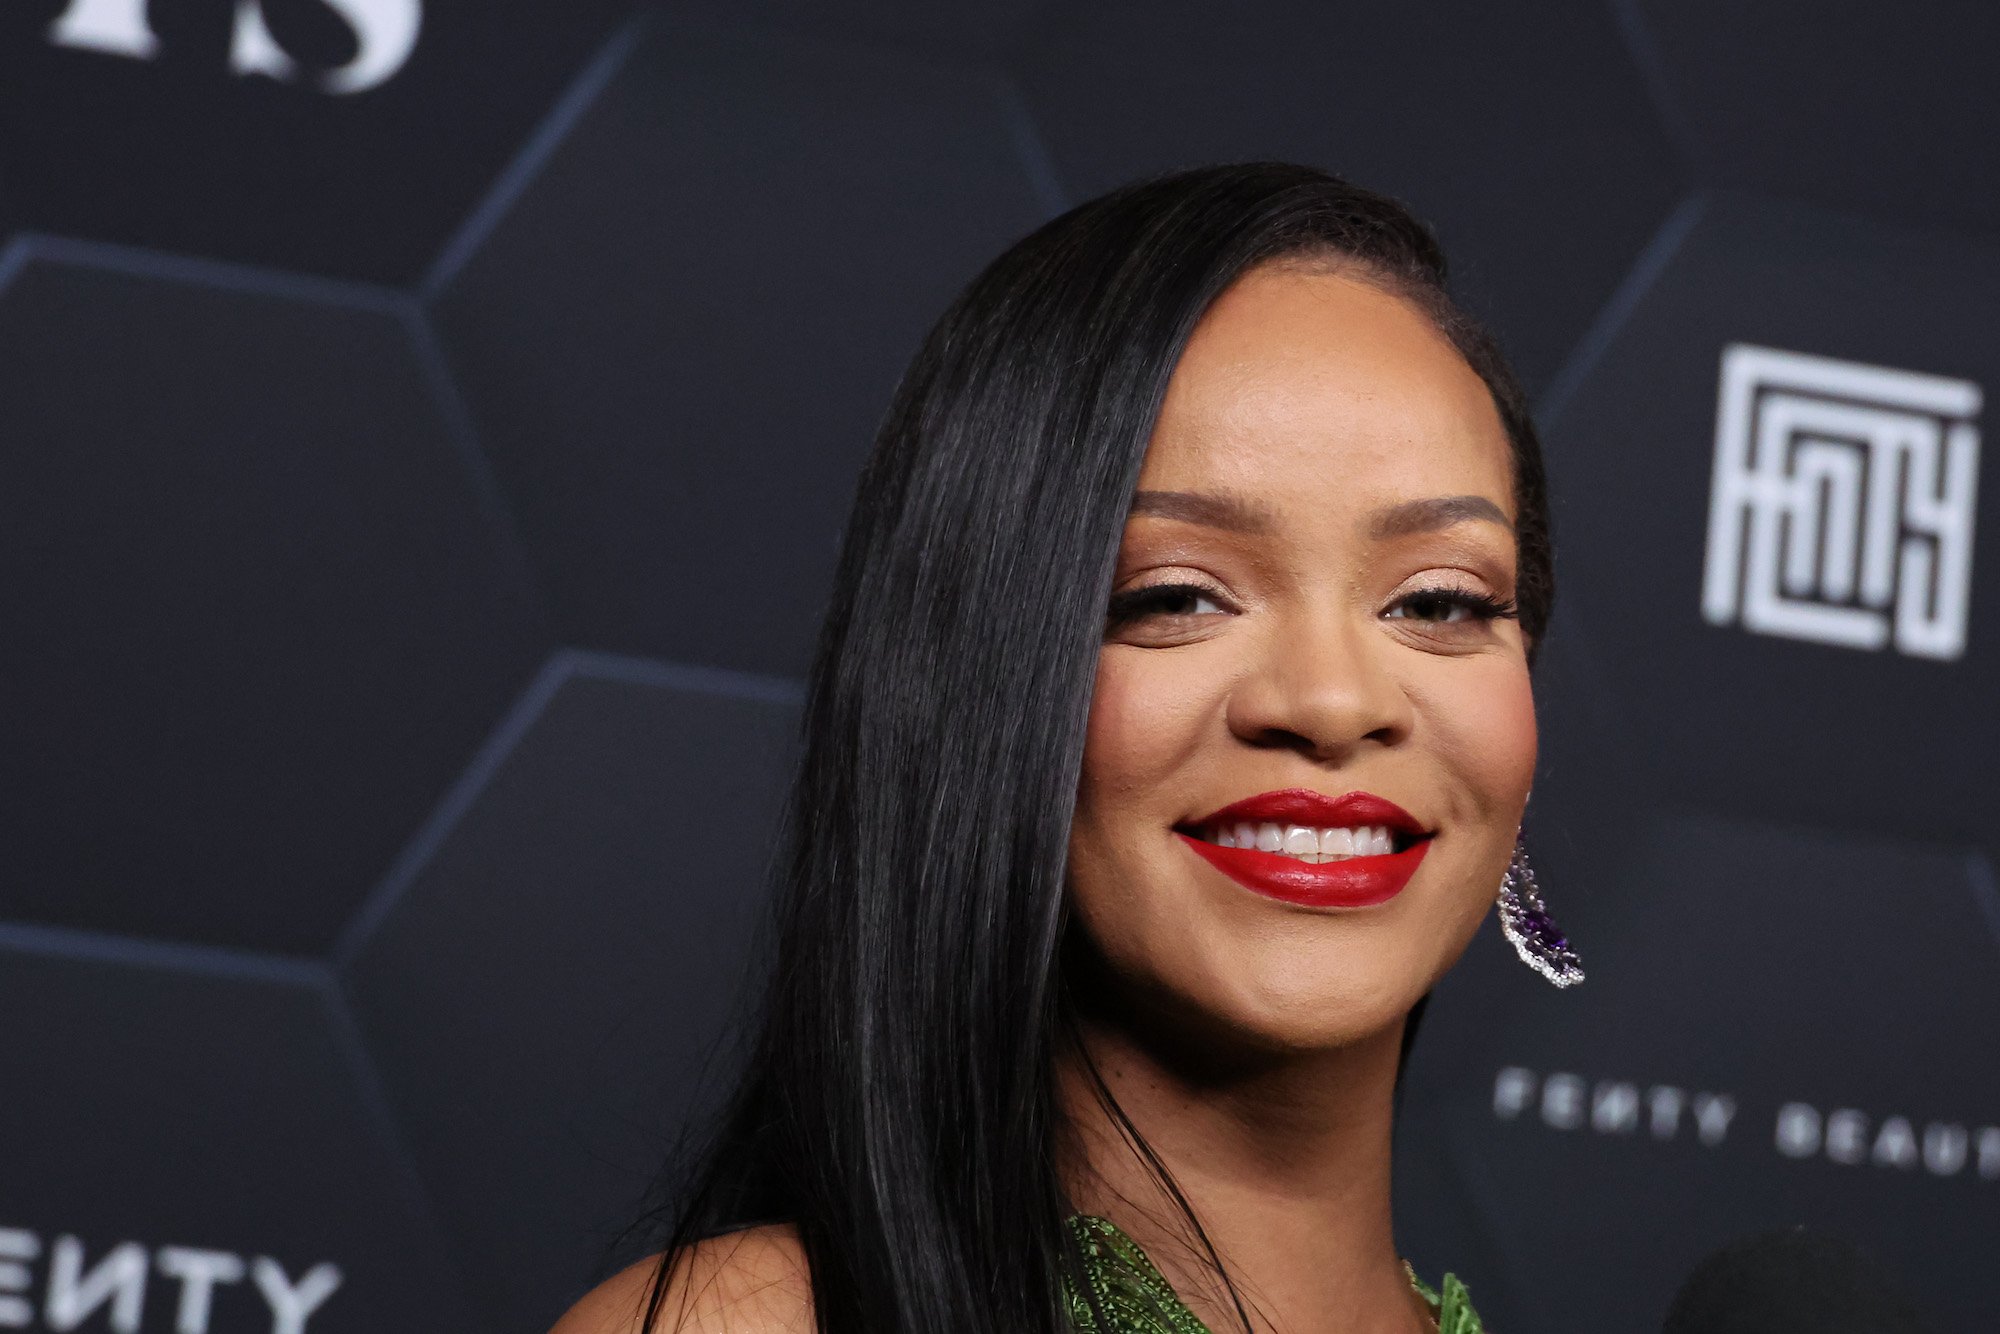 2023 Super Bowl performer Rihanna smiling against a black backdrop